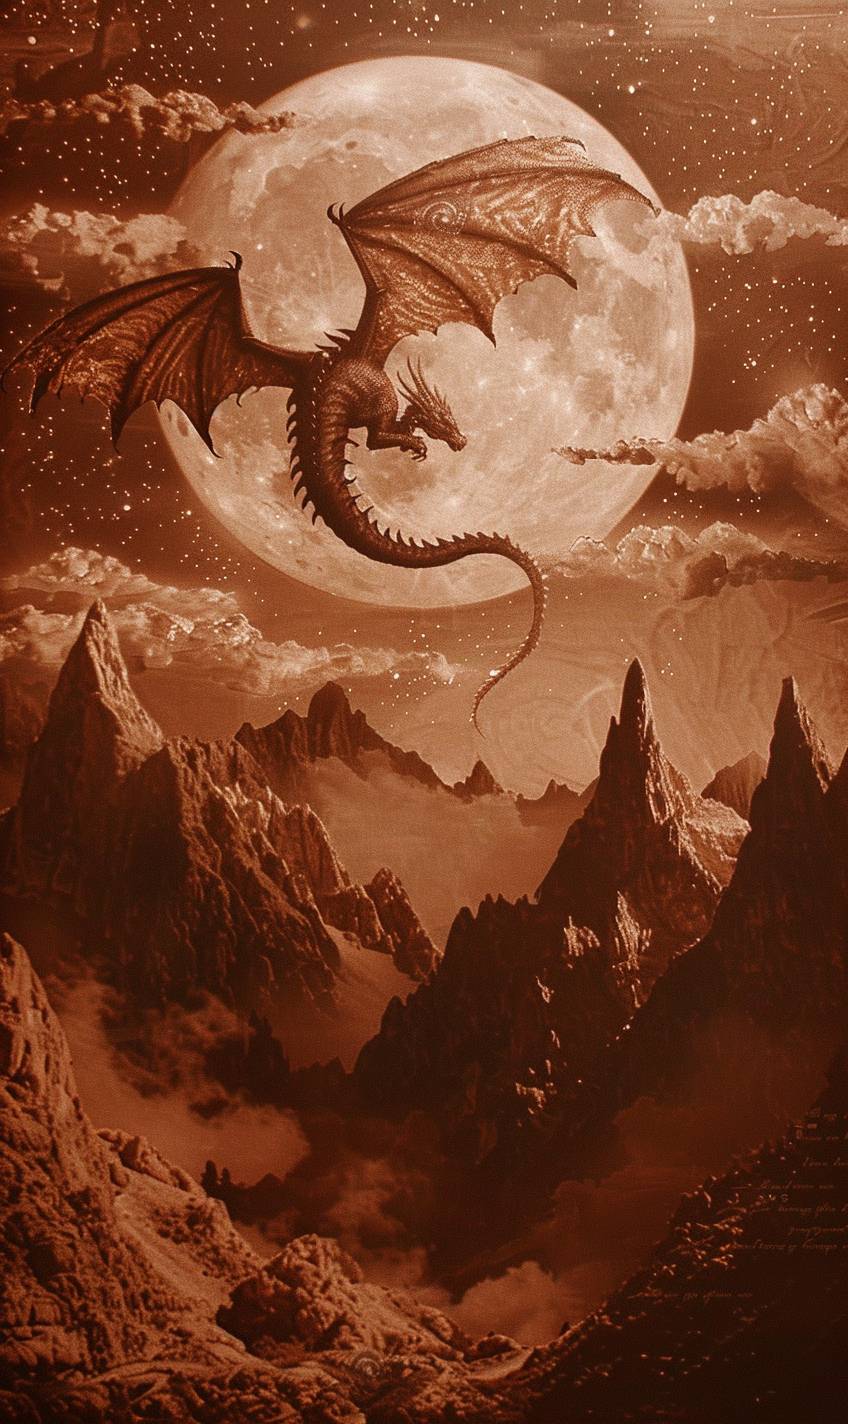 月明かりに照らされた山岳地帯を飛び交う神秘的なドラゴン。その鱗が月光に輝き、空には幻想的な雲と星が広がっている。